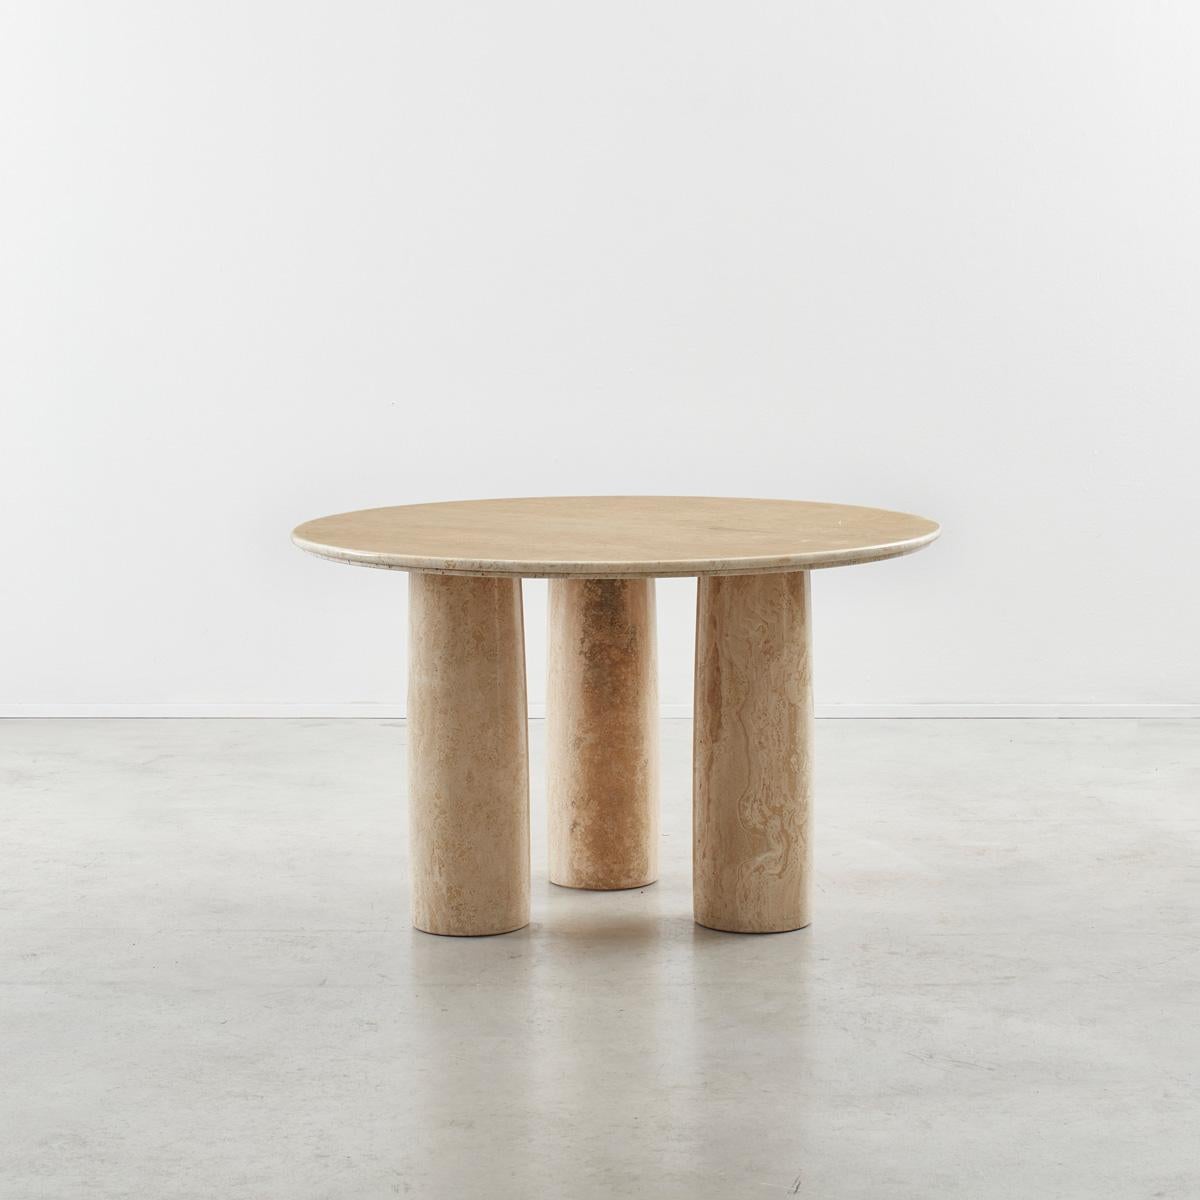 Großer runder Tisch Il Colonnato, entworfen vom Mailänder Architekten Mario Bellini. Der Tisch ist ein begehrtes Stück, vielleicht wegen der monumentalen Präsenz, die er in einem Raum hat. Das minimalistische Design mit fünf Säulenbeinen ist